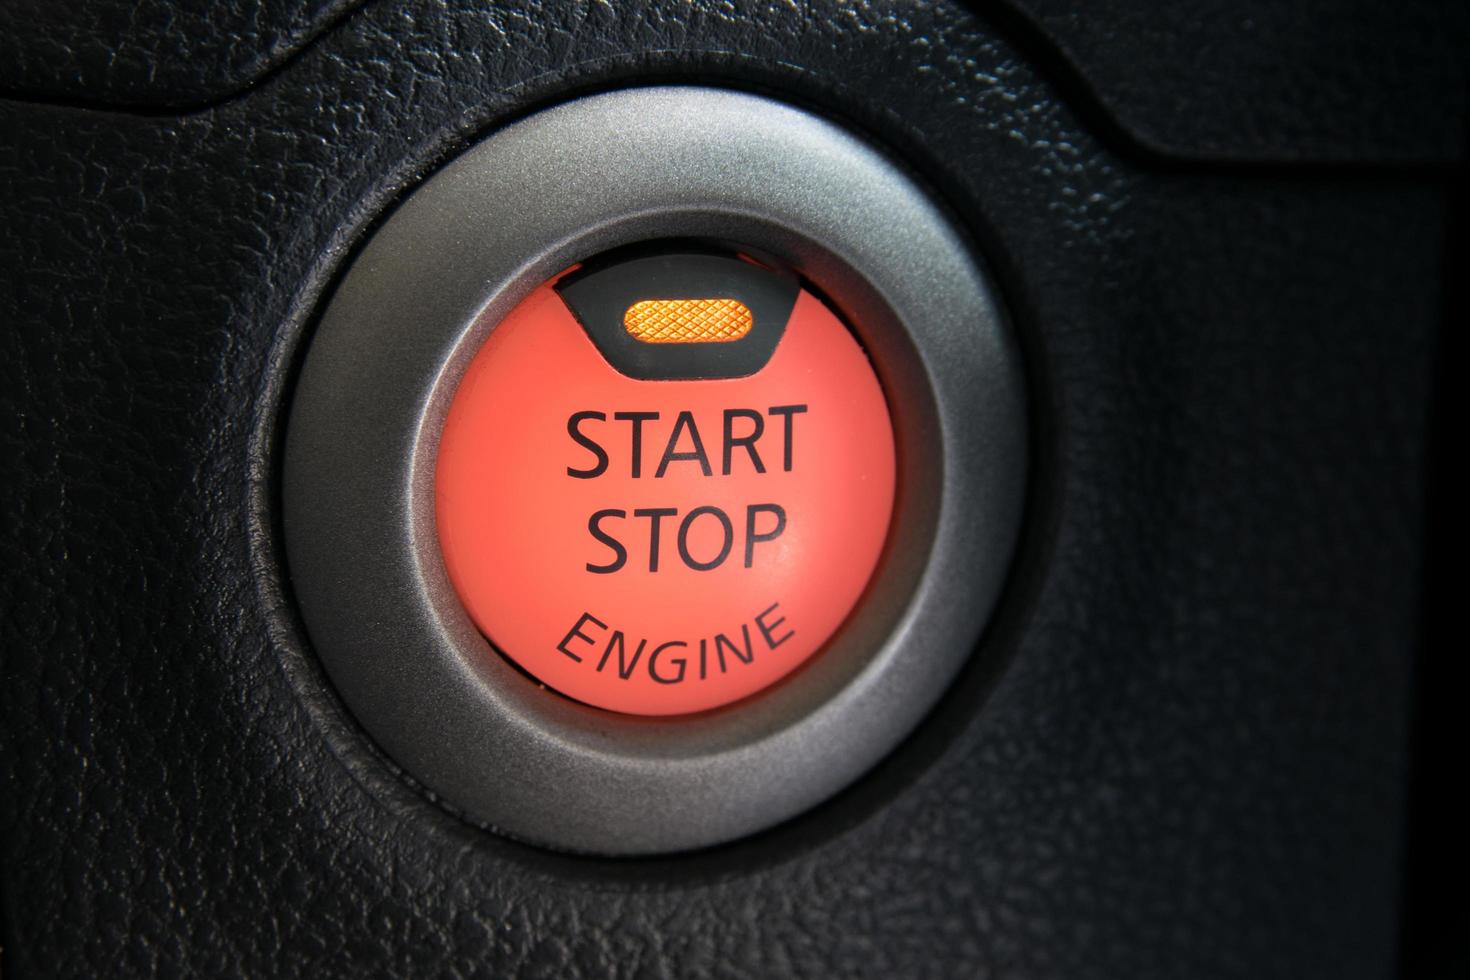 motor start stop knop van een modern auto-interieur foto